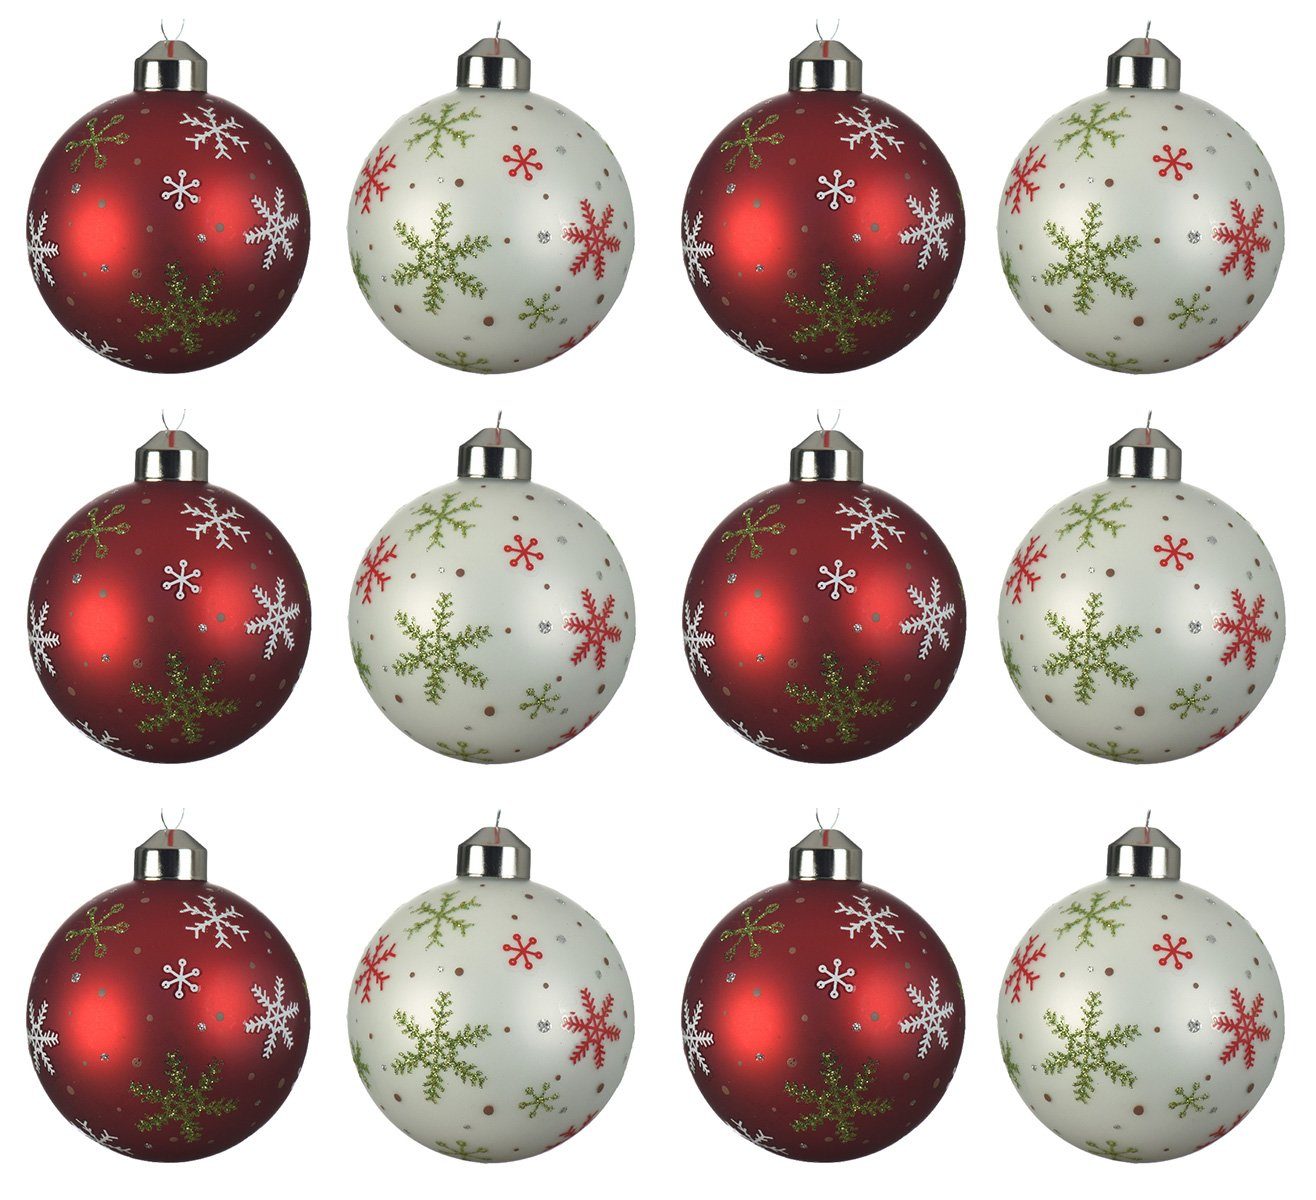 Glas 12er season Schneeflocken mit Weihnachtsbaumkugel, decorations Decoris Weihnachtskugeln rot Motiv Set weiß 8cm /